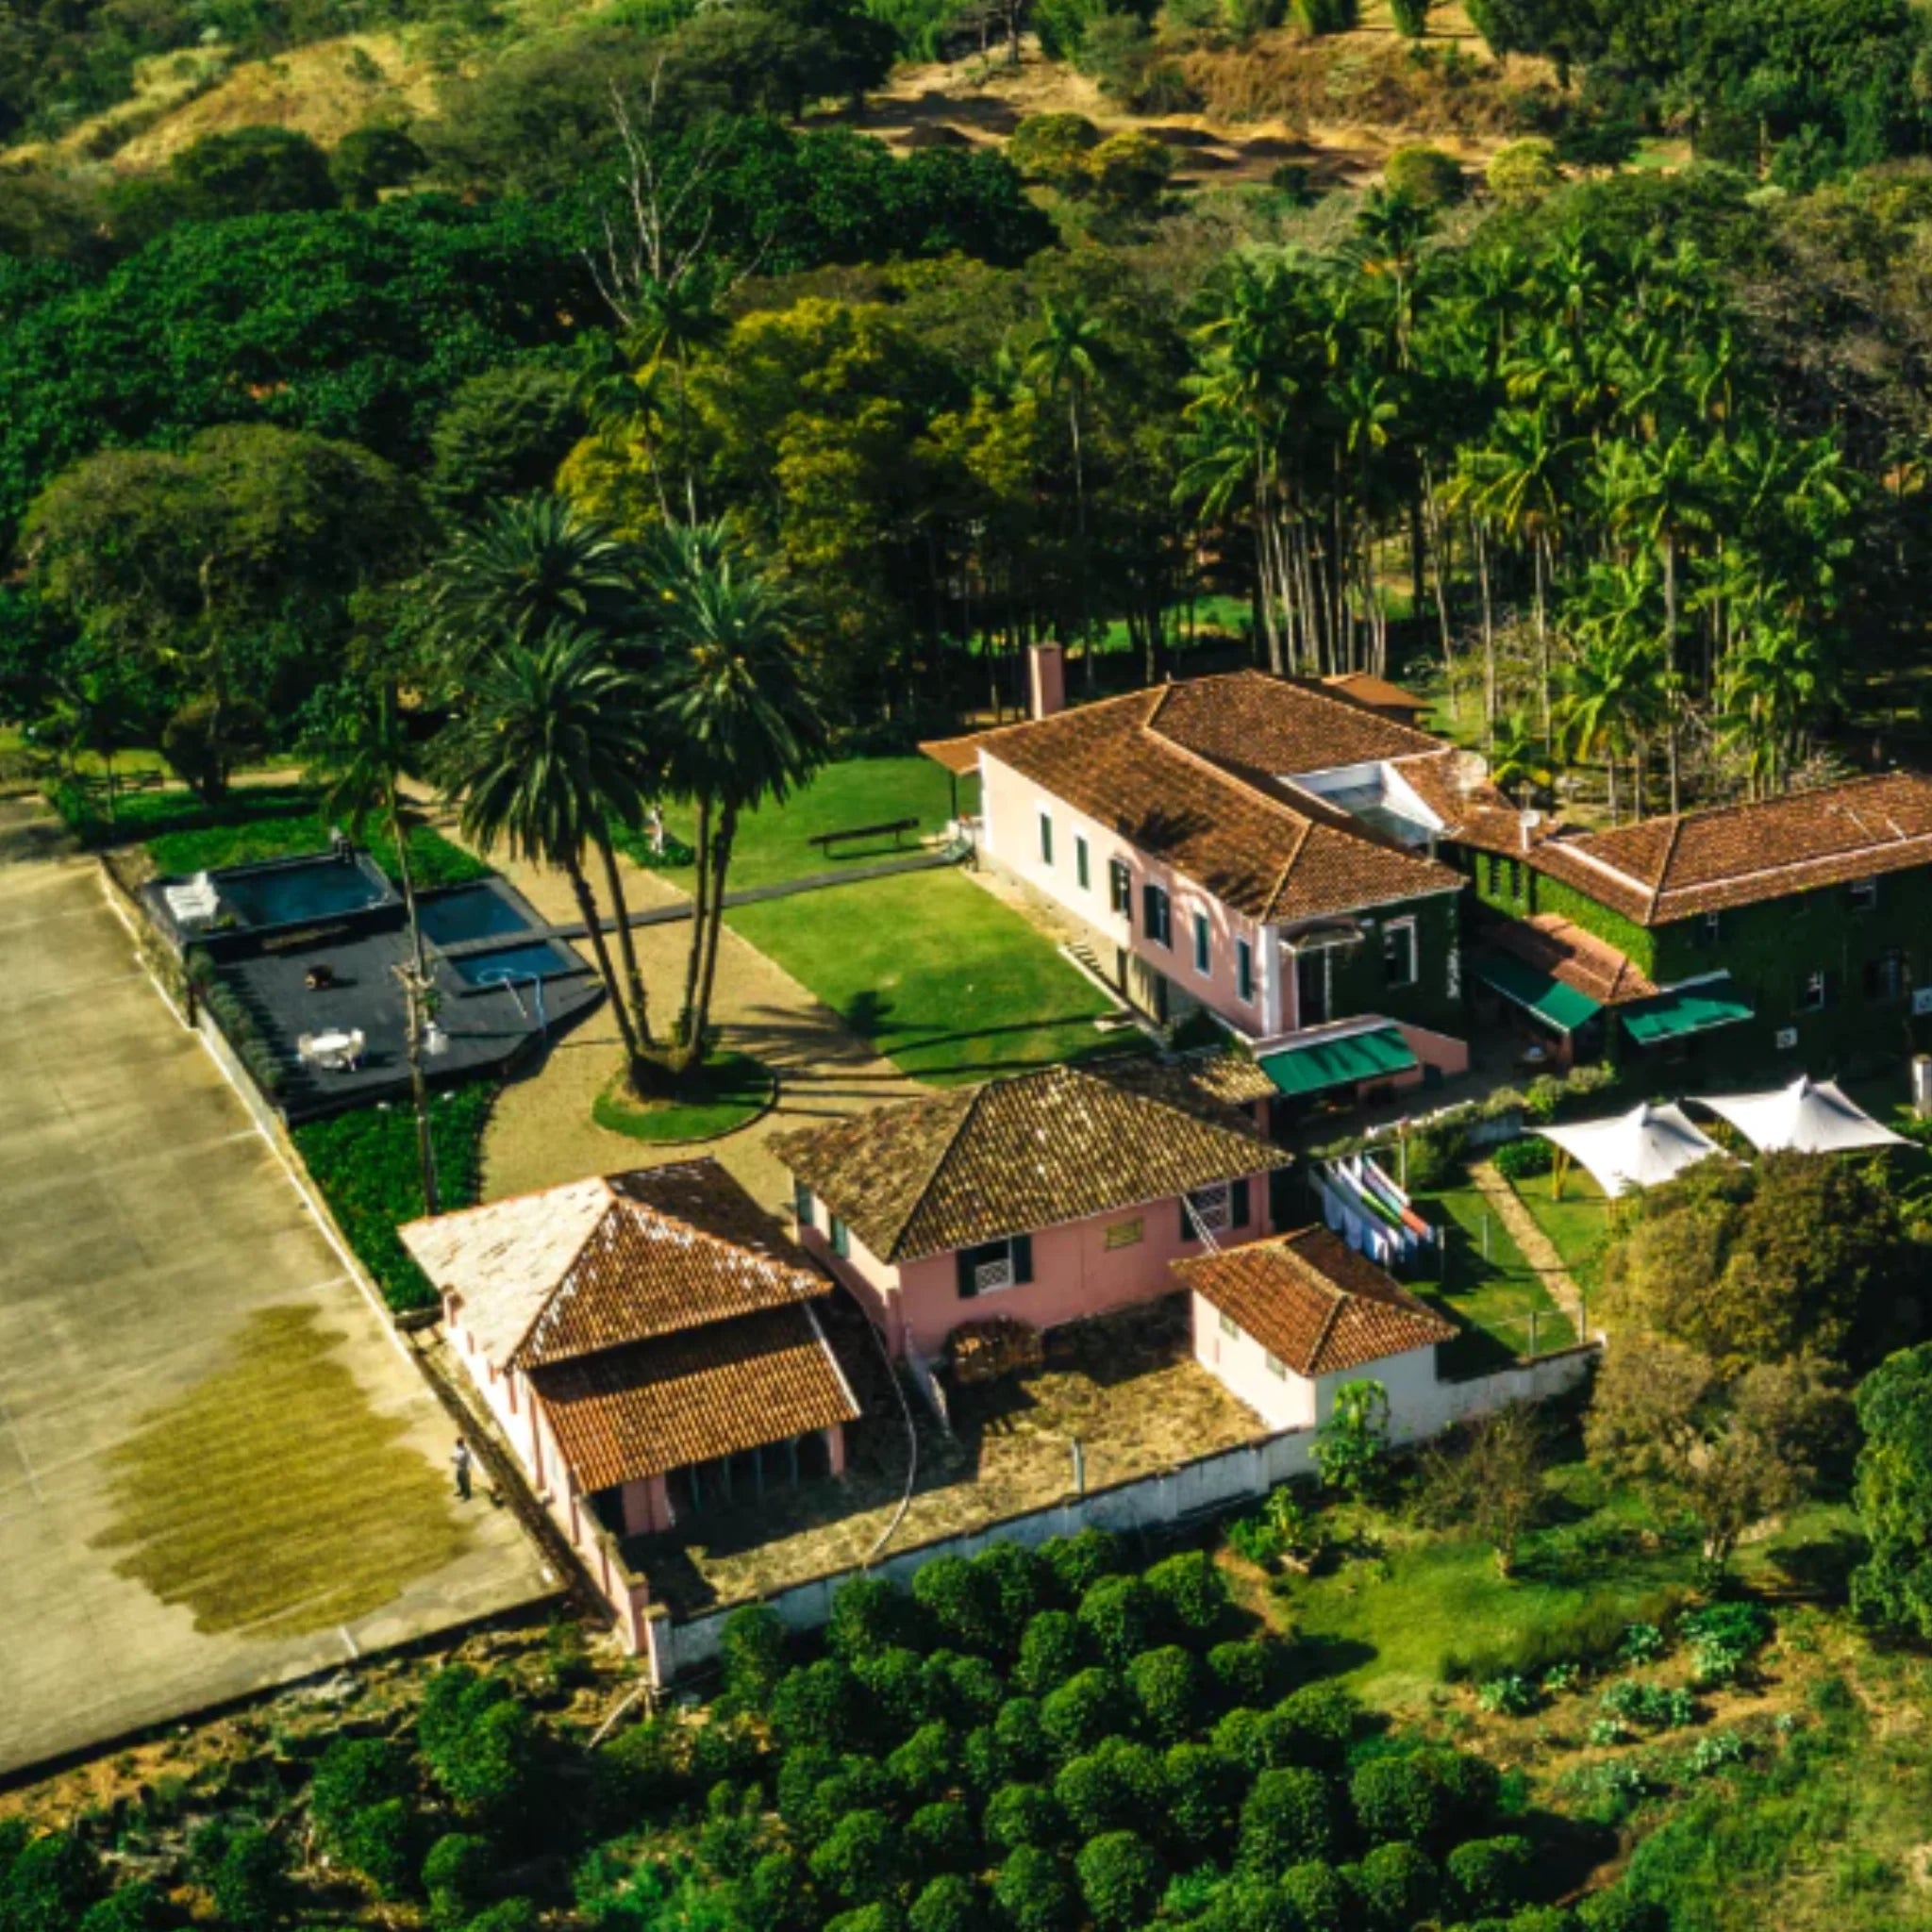 Bild von Häusern auf der Farm Santa Alina in Brasilien von oben aufgenommen.